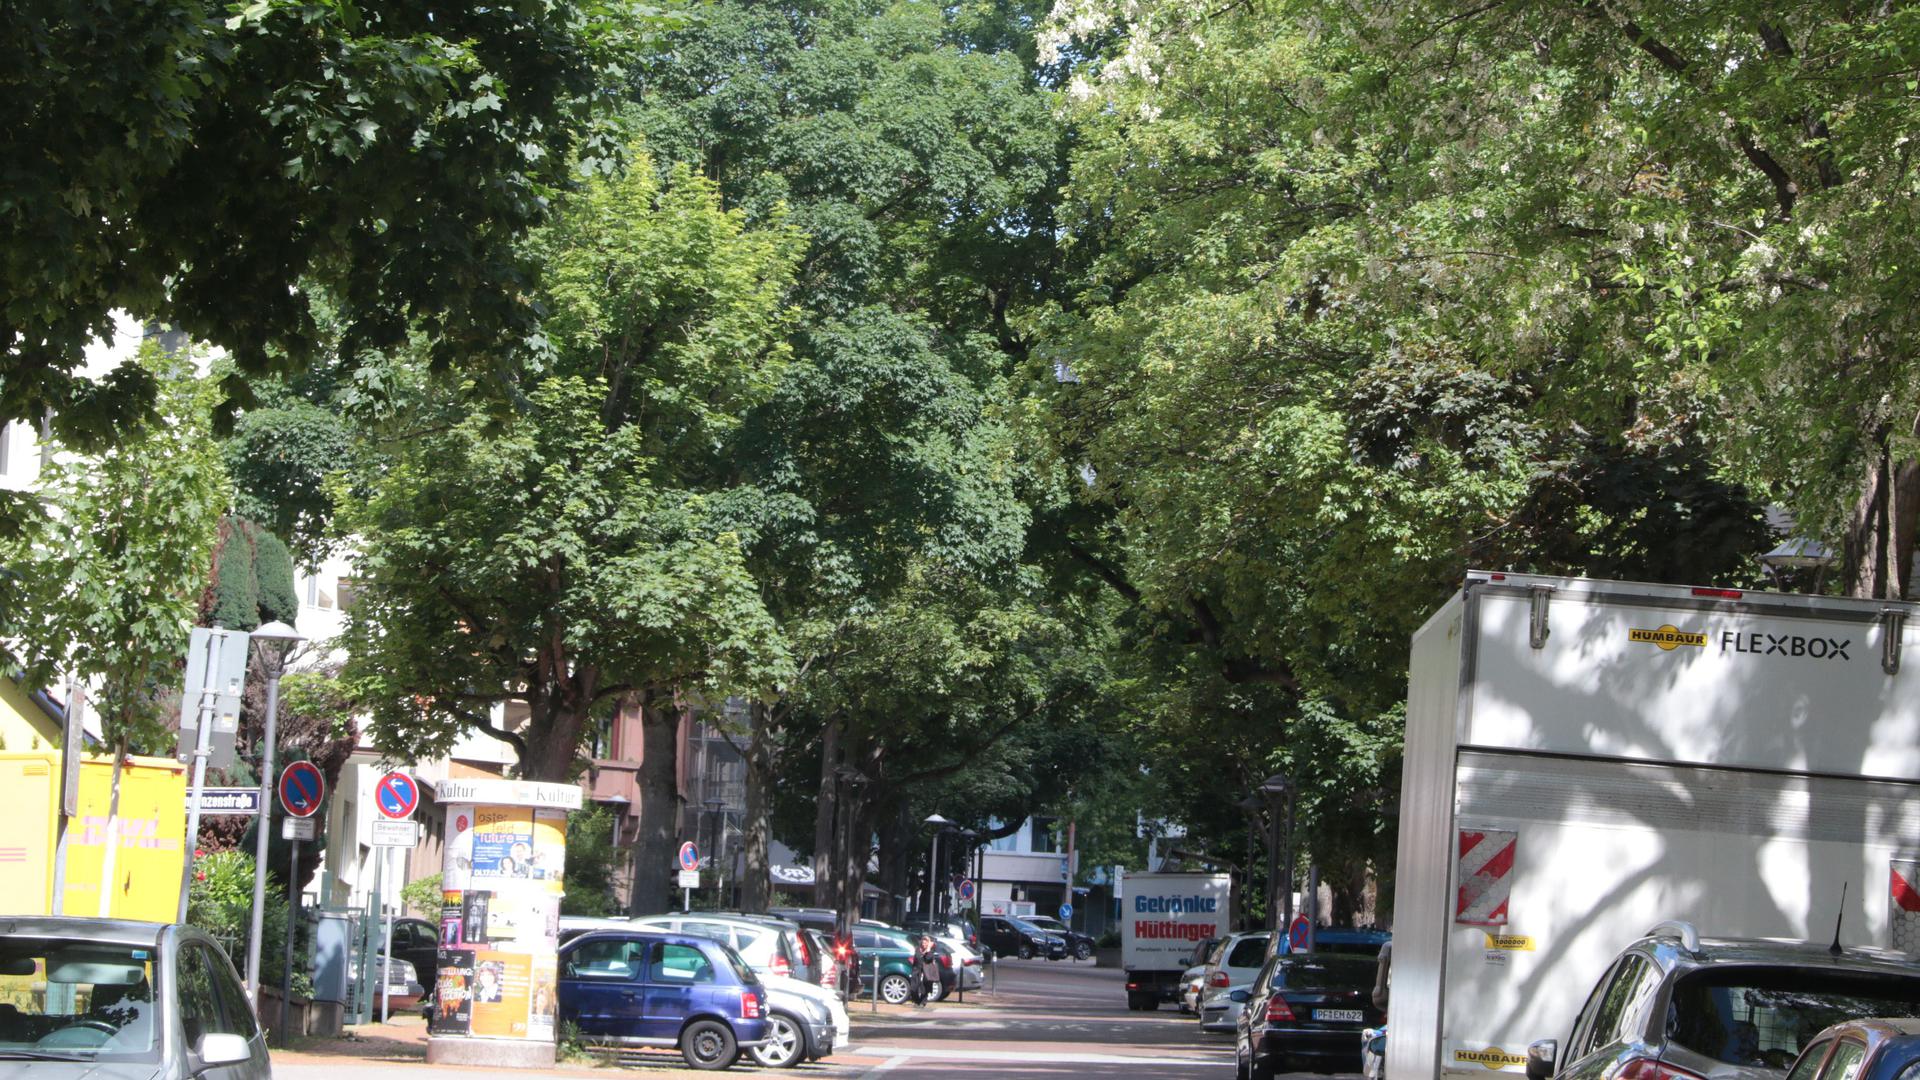 Verbessern das Stadtklima: Bäume sind wichtig für das Klima in der Innenstadt, sie sind aber auch gefährdet. Nicht jede Baumart ist den steigenden Temperaturen und der zunehmenden Trockenheit gewachsen